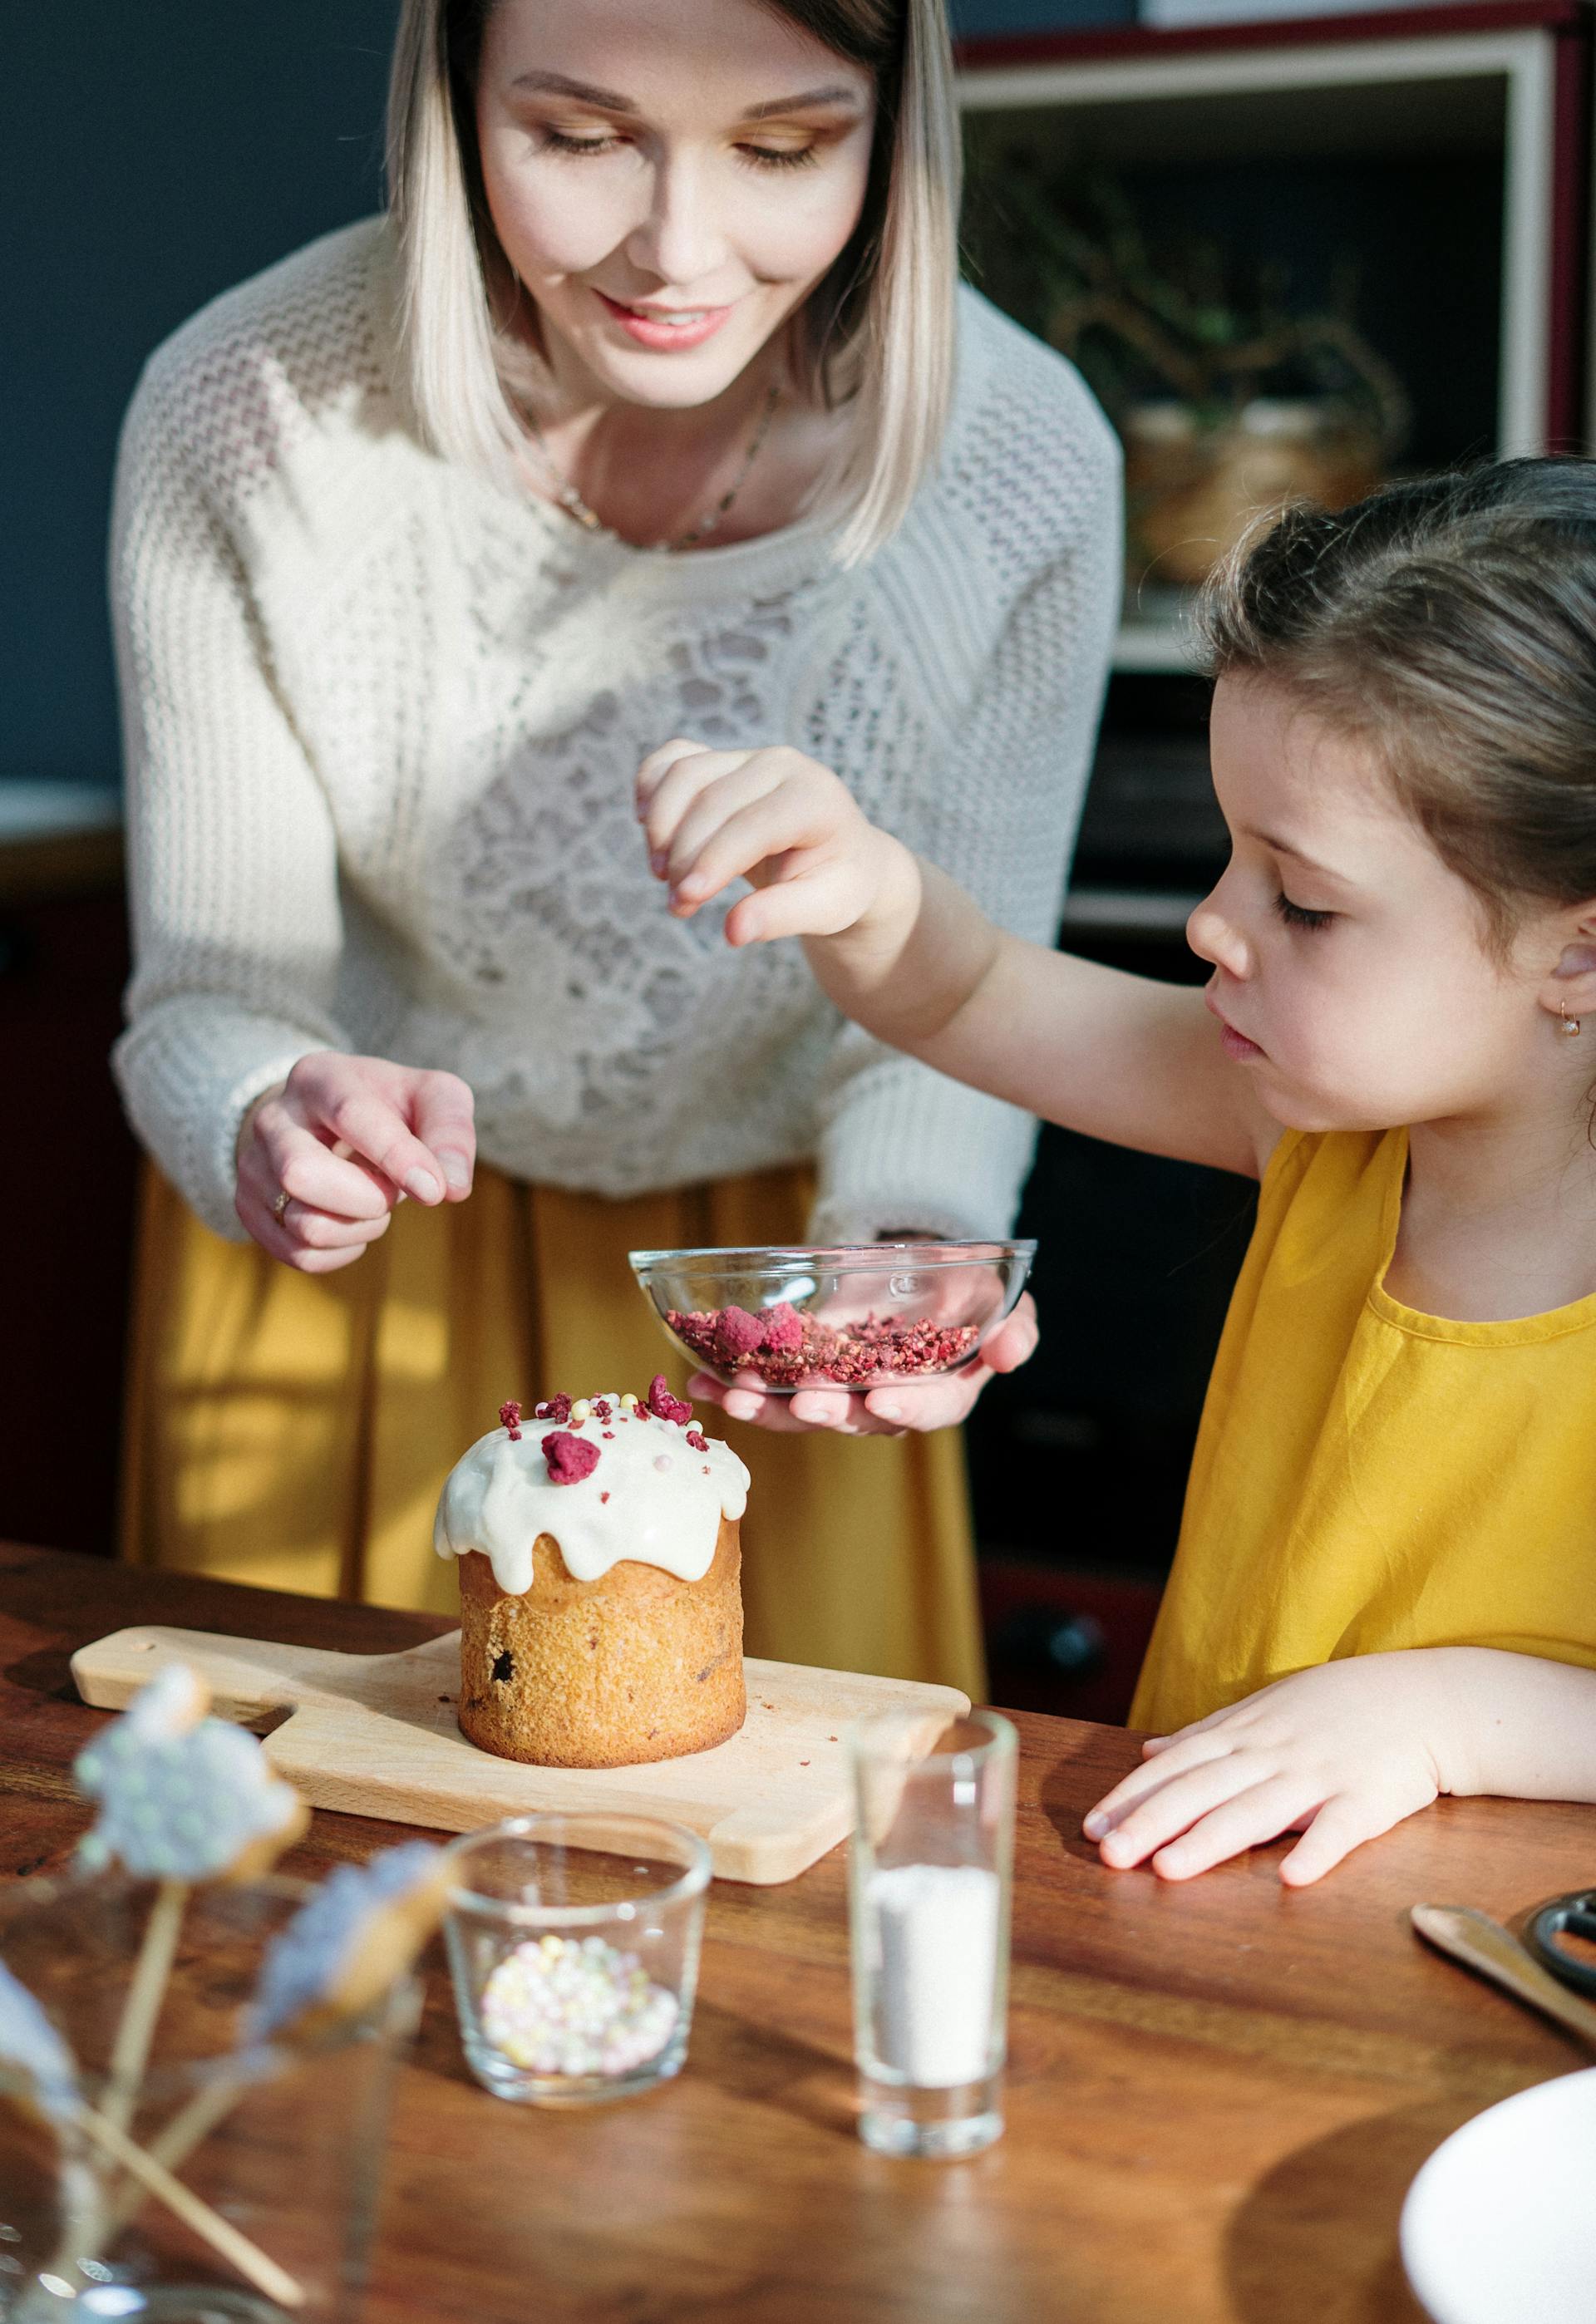 Eine Frau und ein kleines Mädchen dekorieren einen Kuchen | Quelle: Pexels